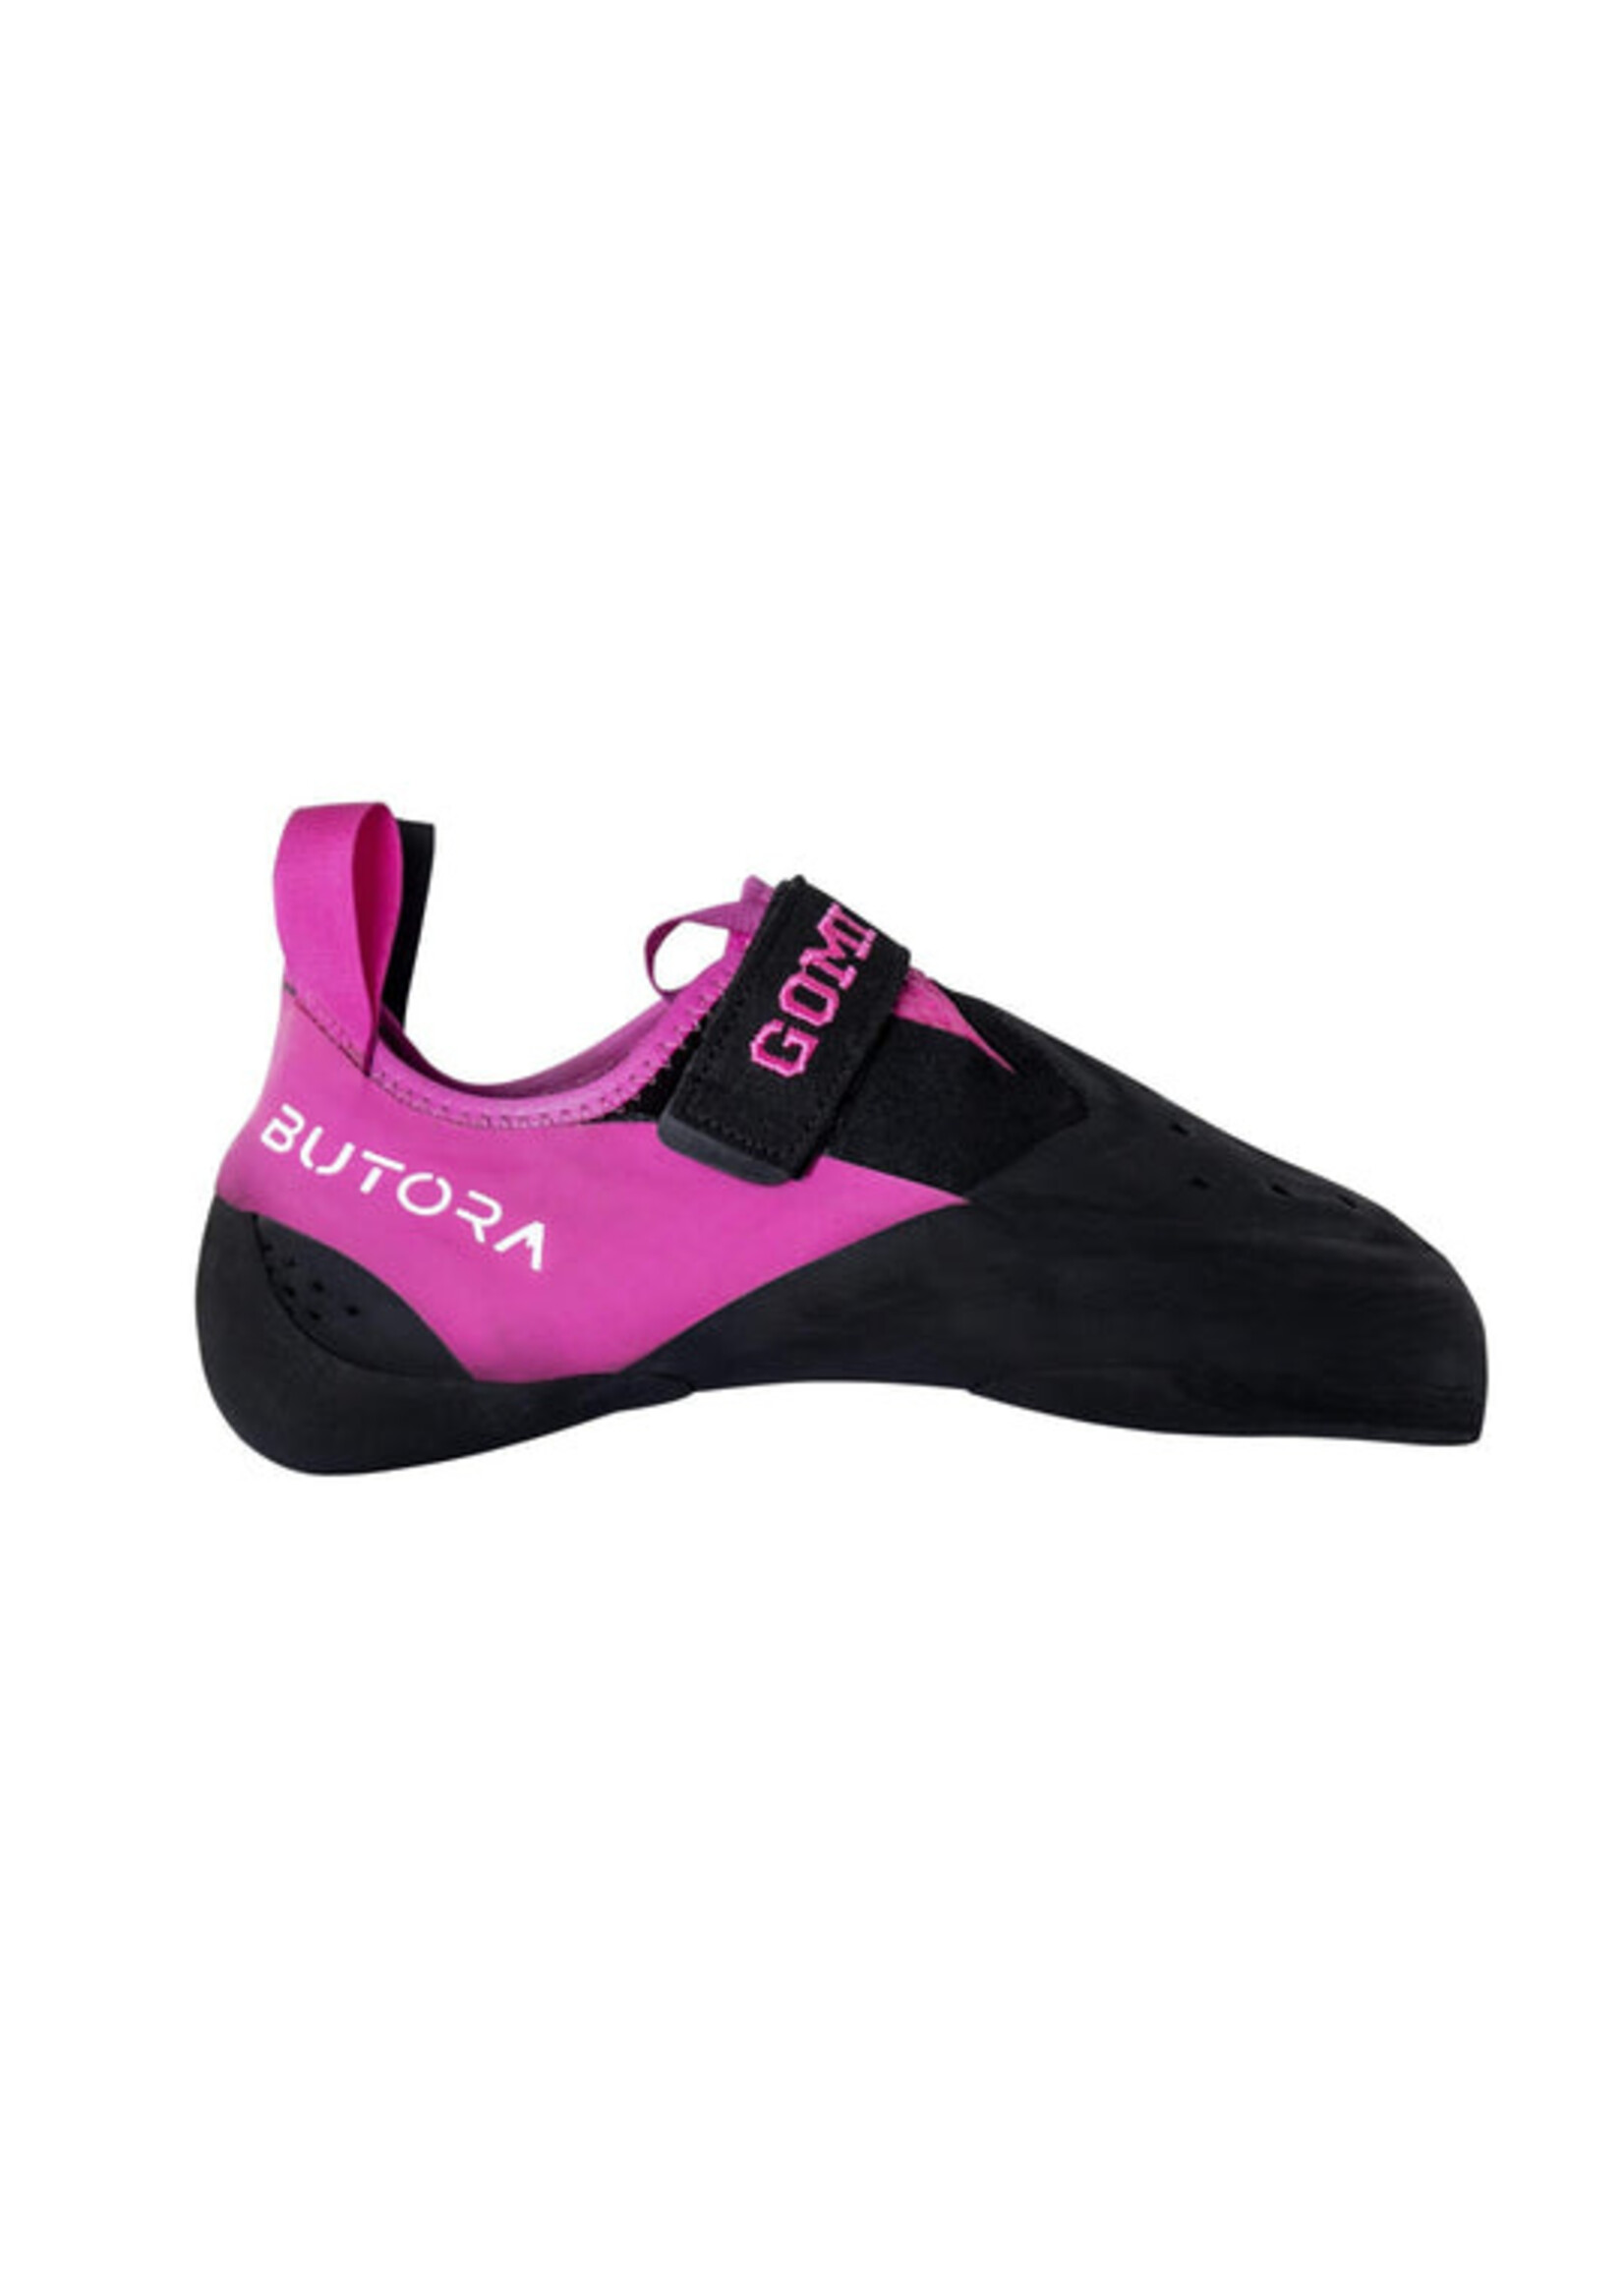 Butora Climbing Gomi Narrow Fit Climbing Shoe - Pink